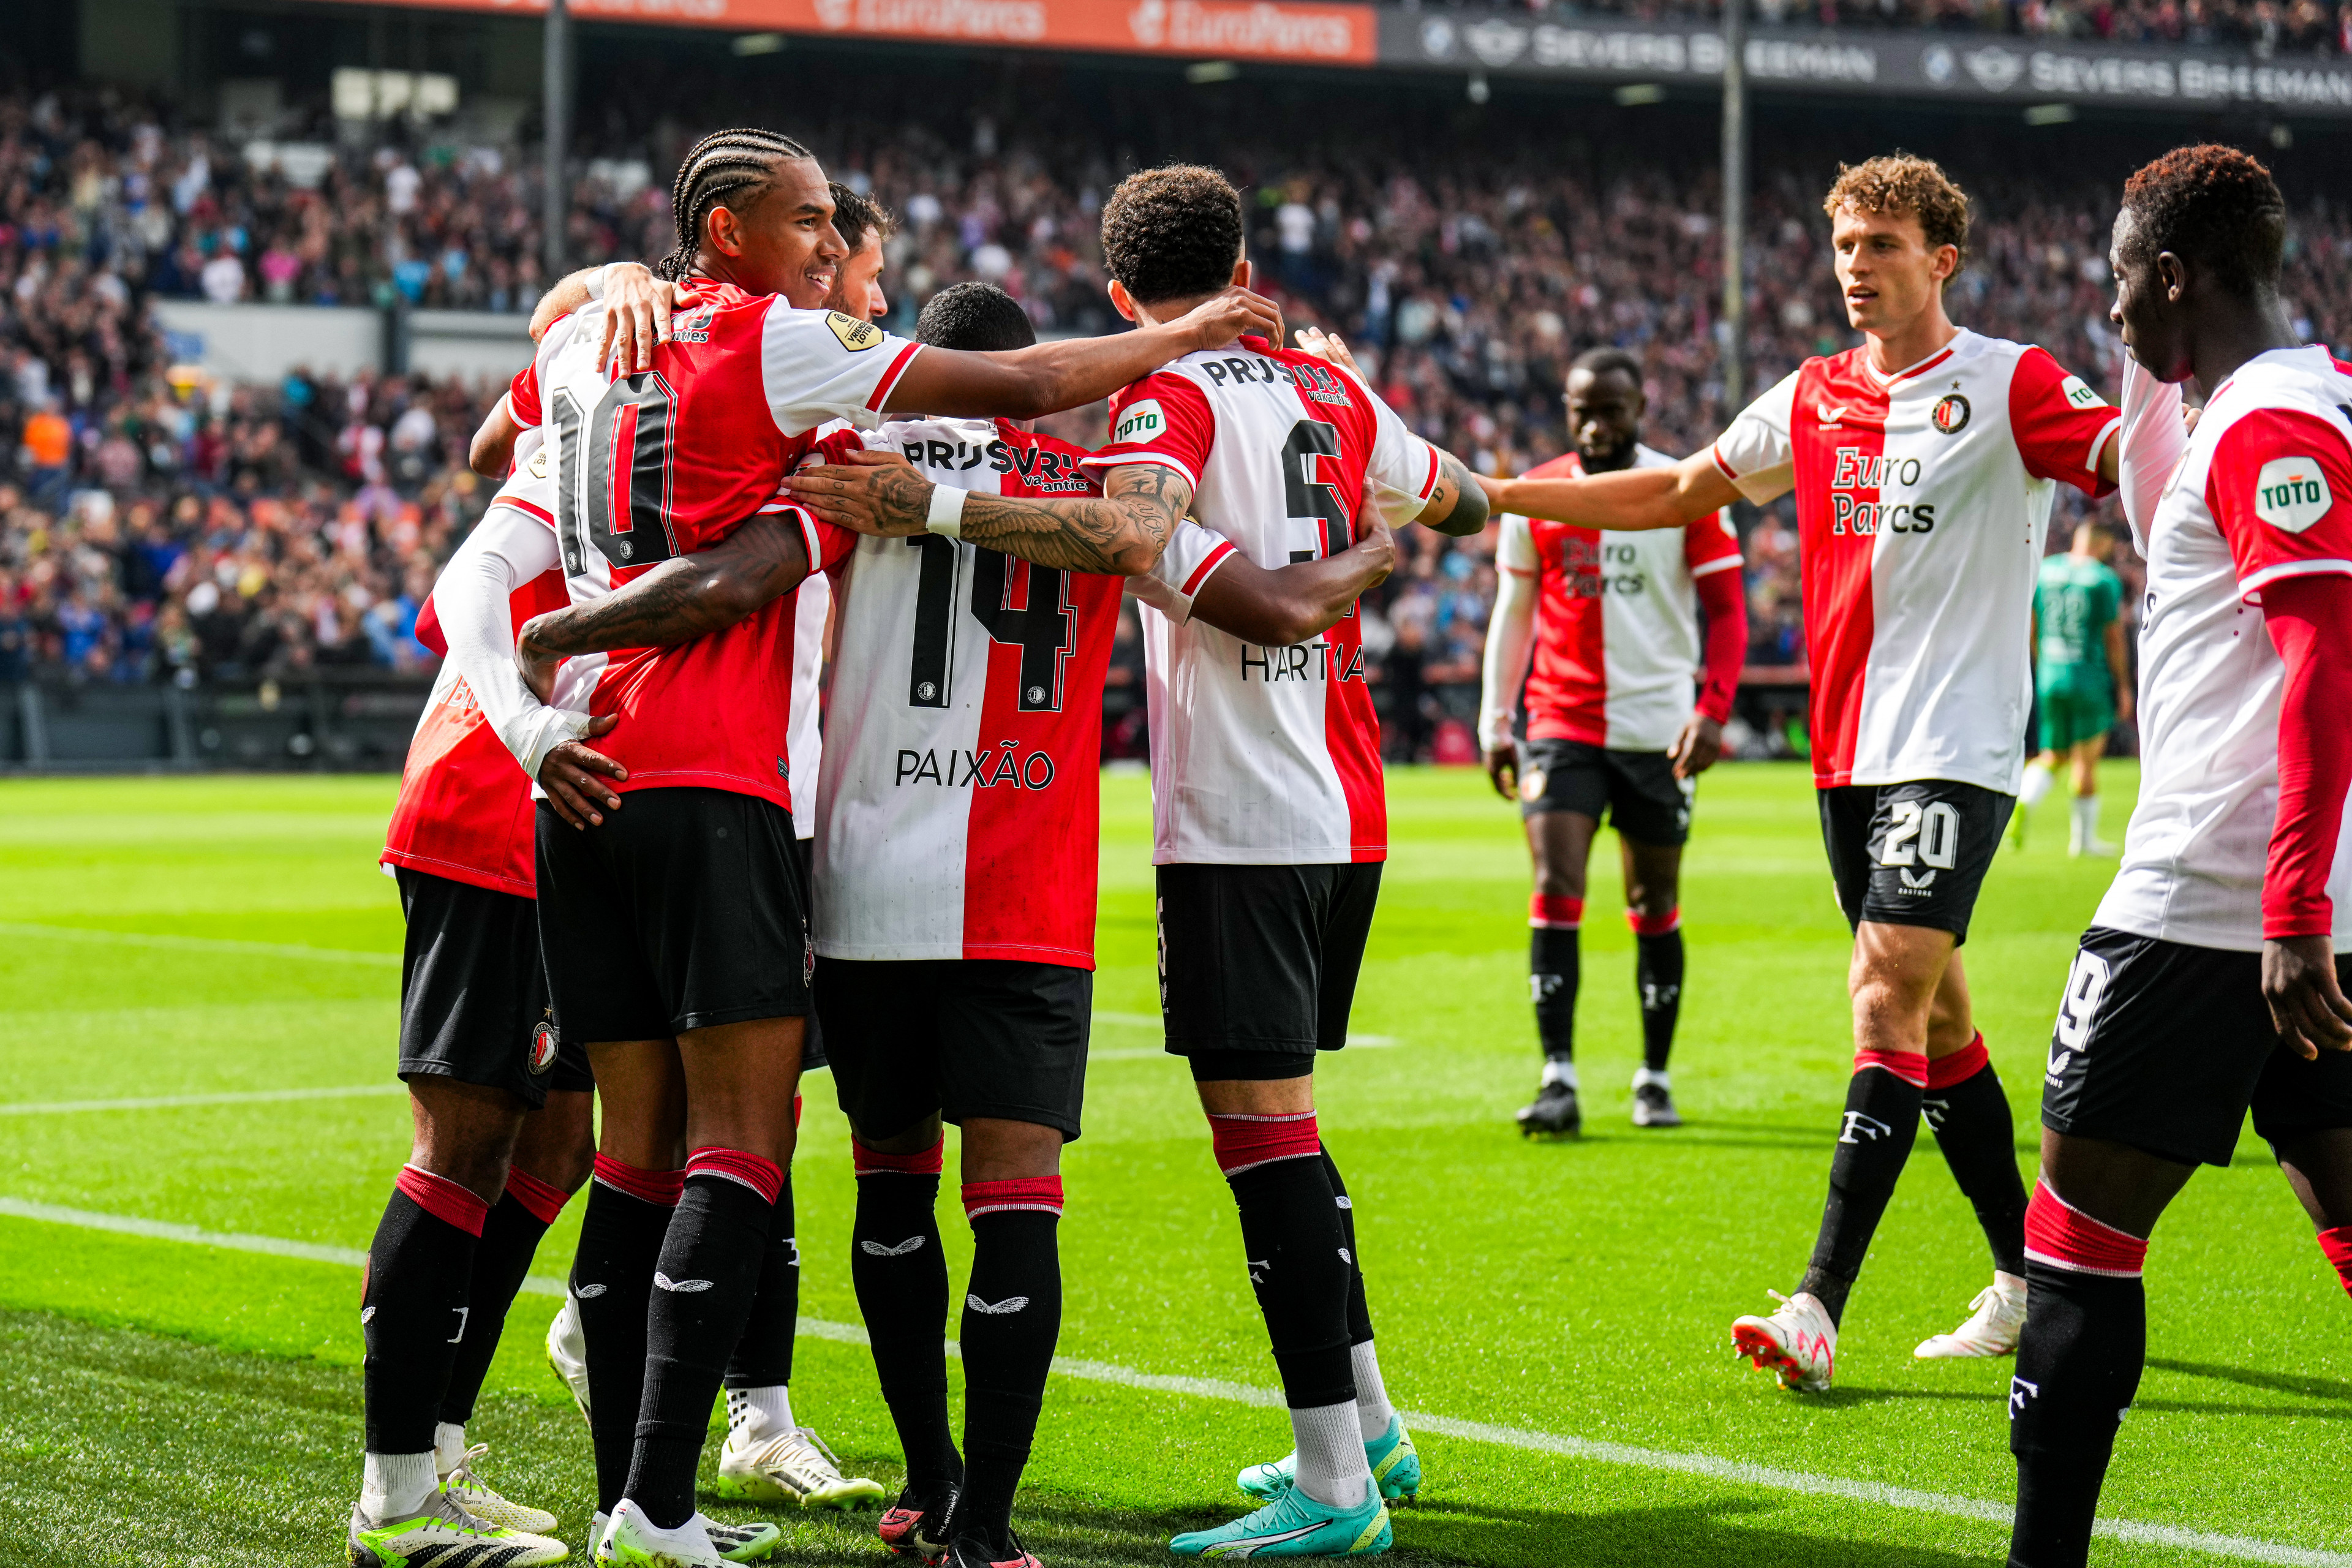 Cijfers laten zien: Feyenoord presteert beter dan vorig seizoen